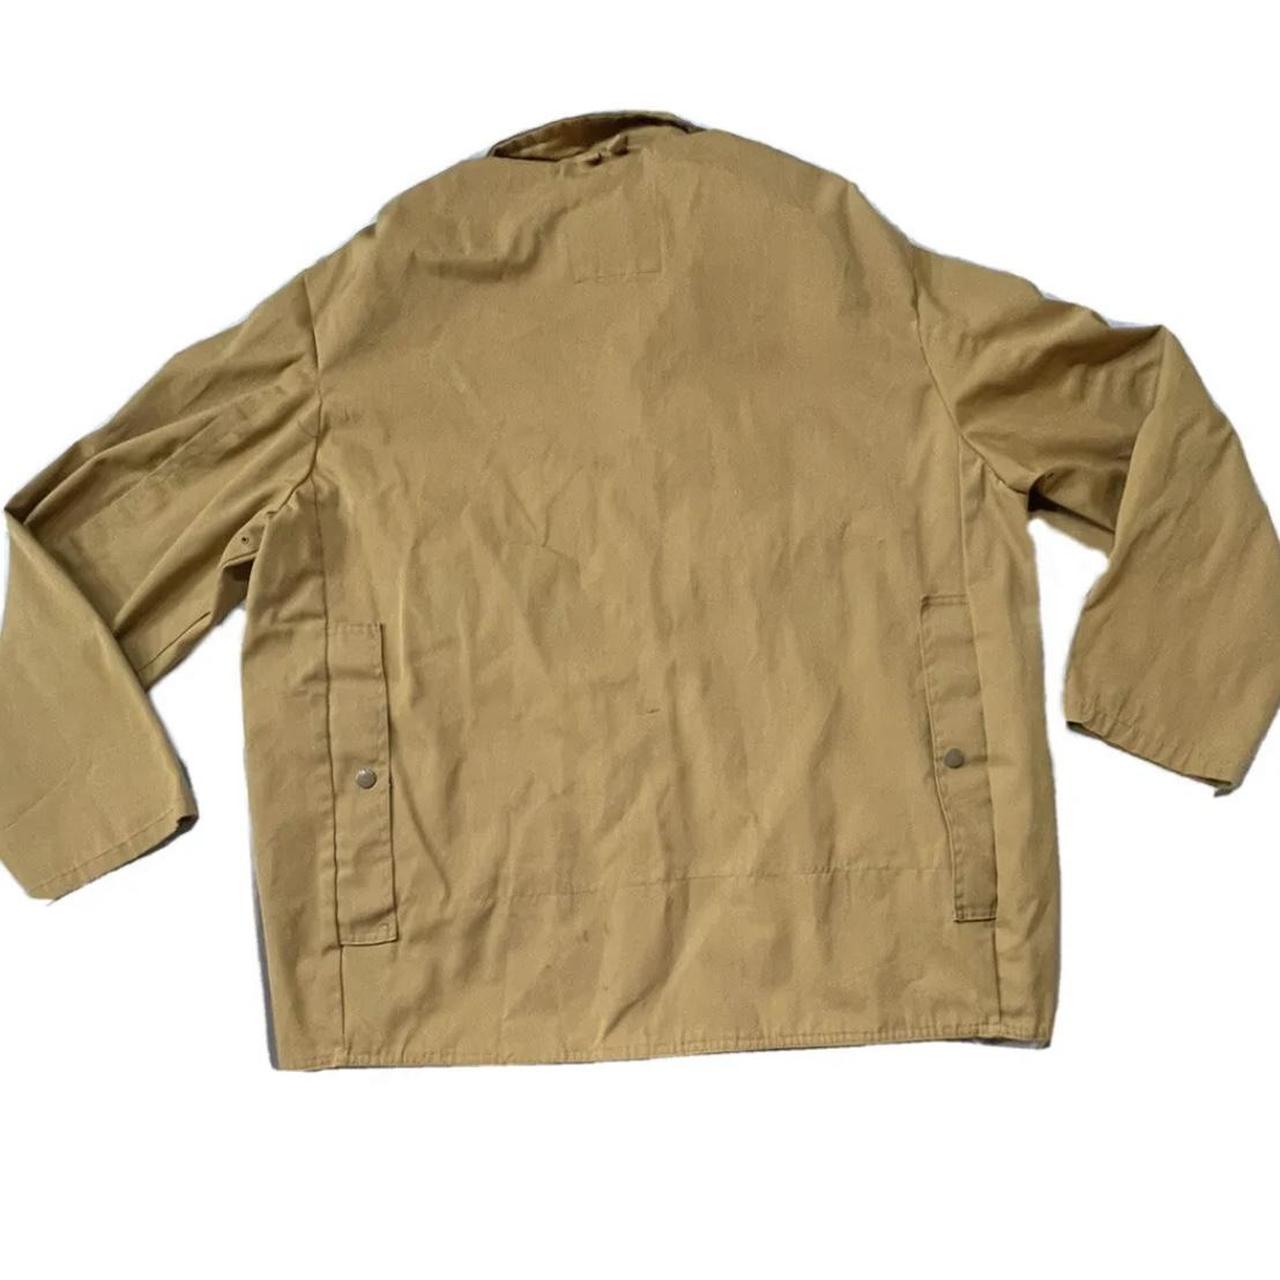 Sears Men's Tan Jacket (2)